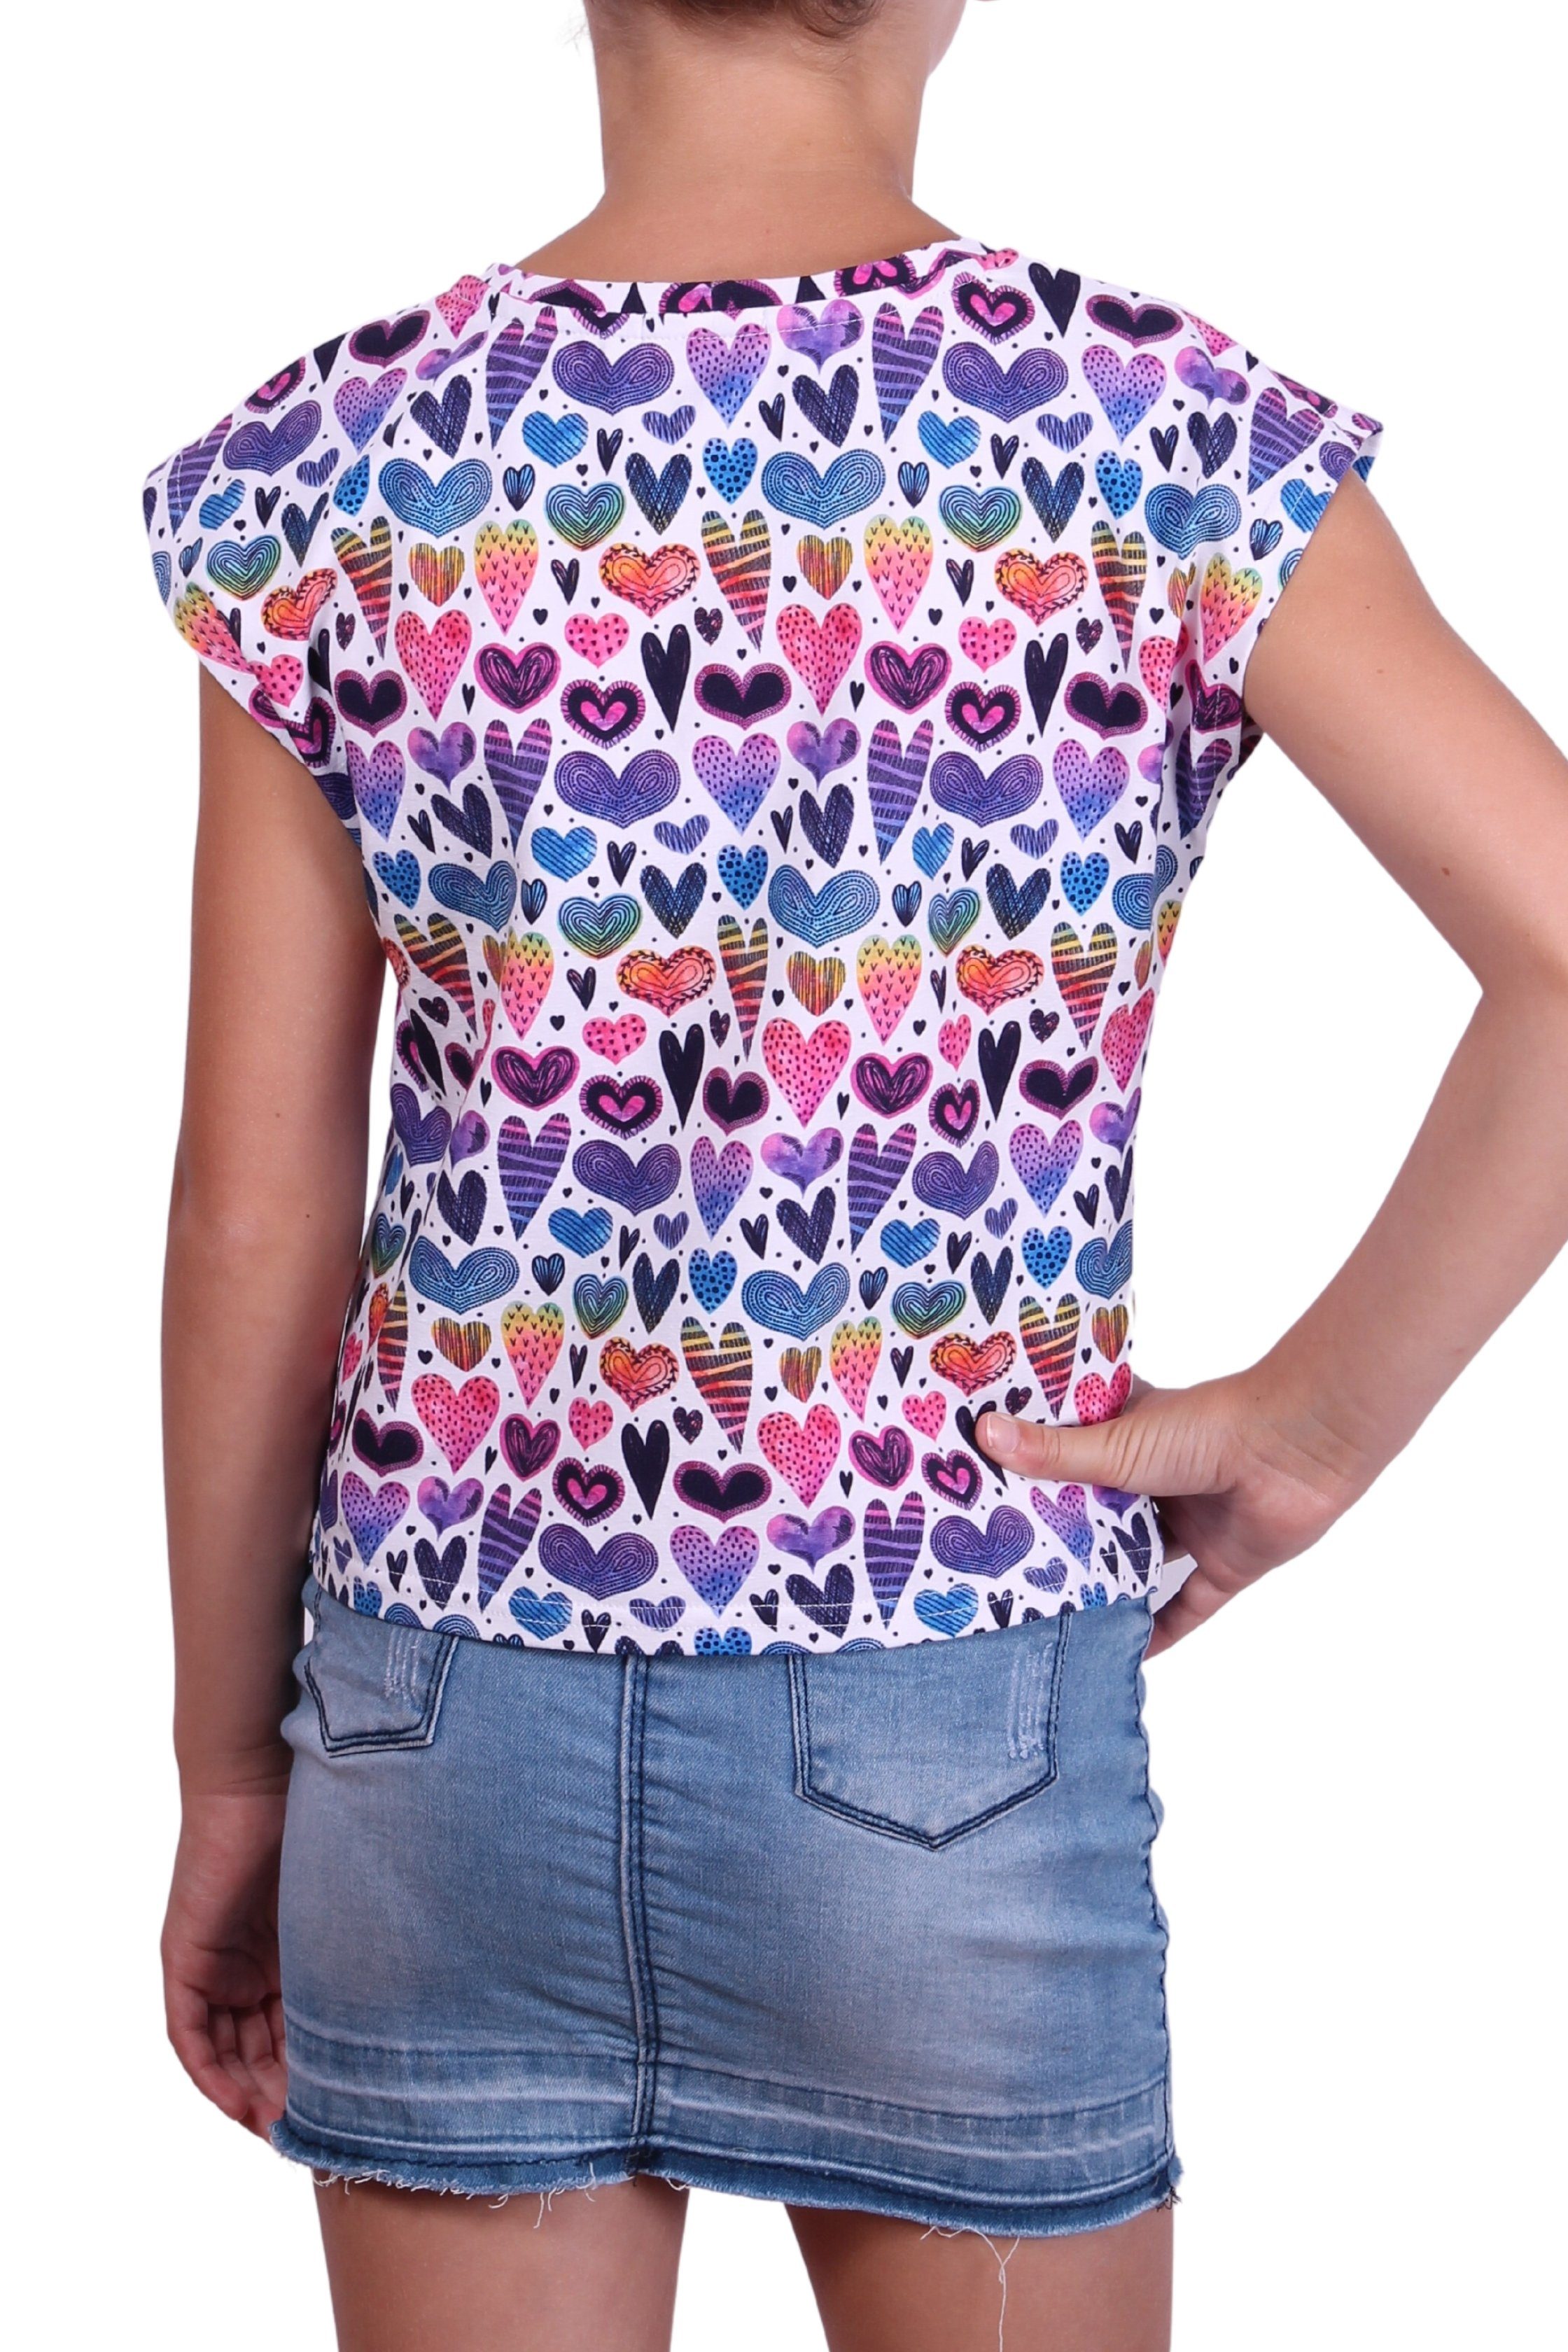 für Mädchen Print-Shirt mit T-Shirt Alloverprint, coolismo Baumwolle Rundhalsausschnitt, Herzchen-Print